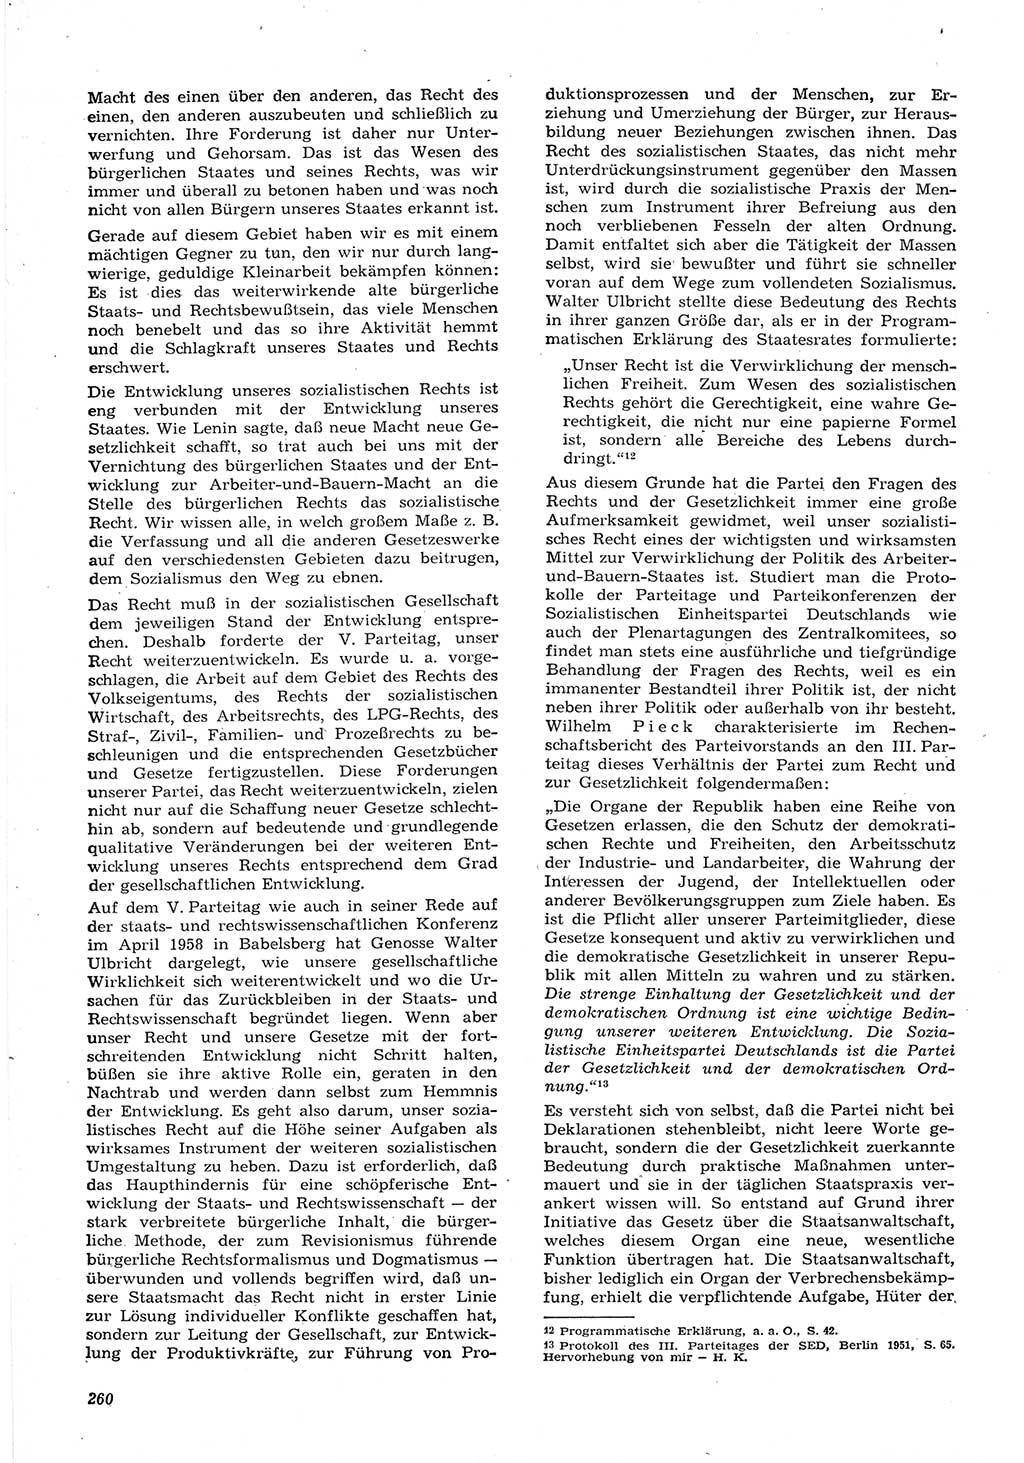 Neue Justiz (NJ), Zeitschrift für Recht und Rechtswissenschaft [Deutsche Demokratische Republik (DDR)], 15. Jahrgang 1961, Seite 260 (NJ DDR 1961, S. 260)